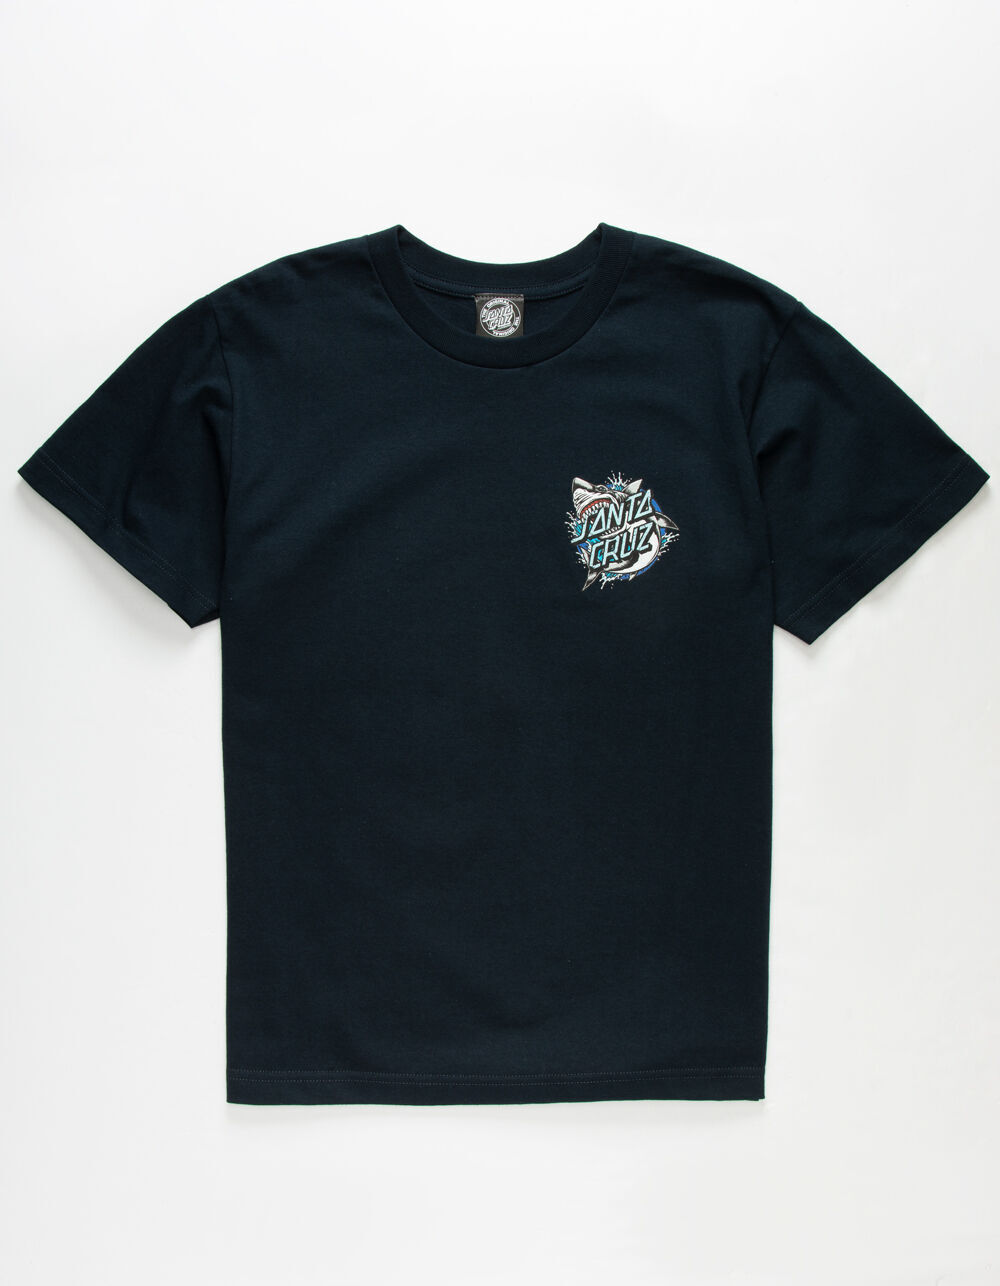 SANTA CRUZ Shark Dot Navy Boys T-Shirt image number 2